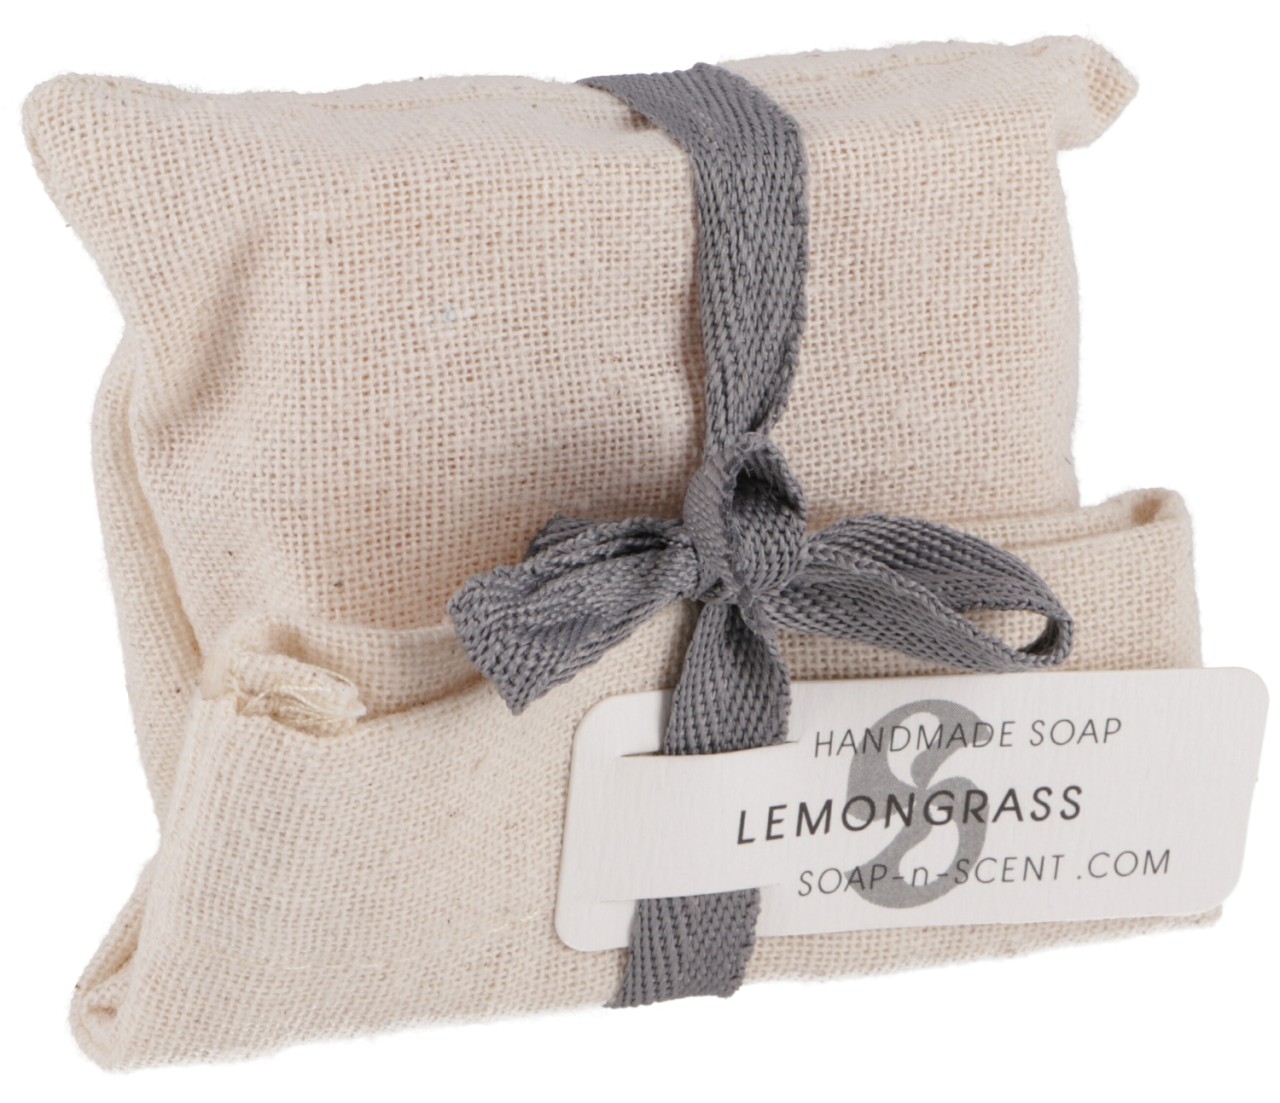 Seife Lemongrass 100g handgefertigt Thailand in Baumwollsäckchen